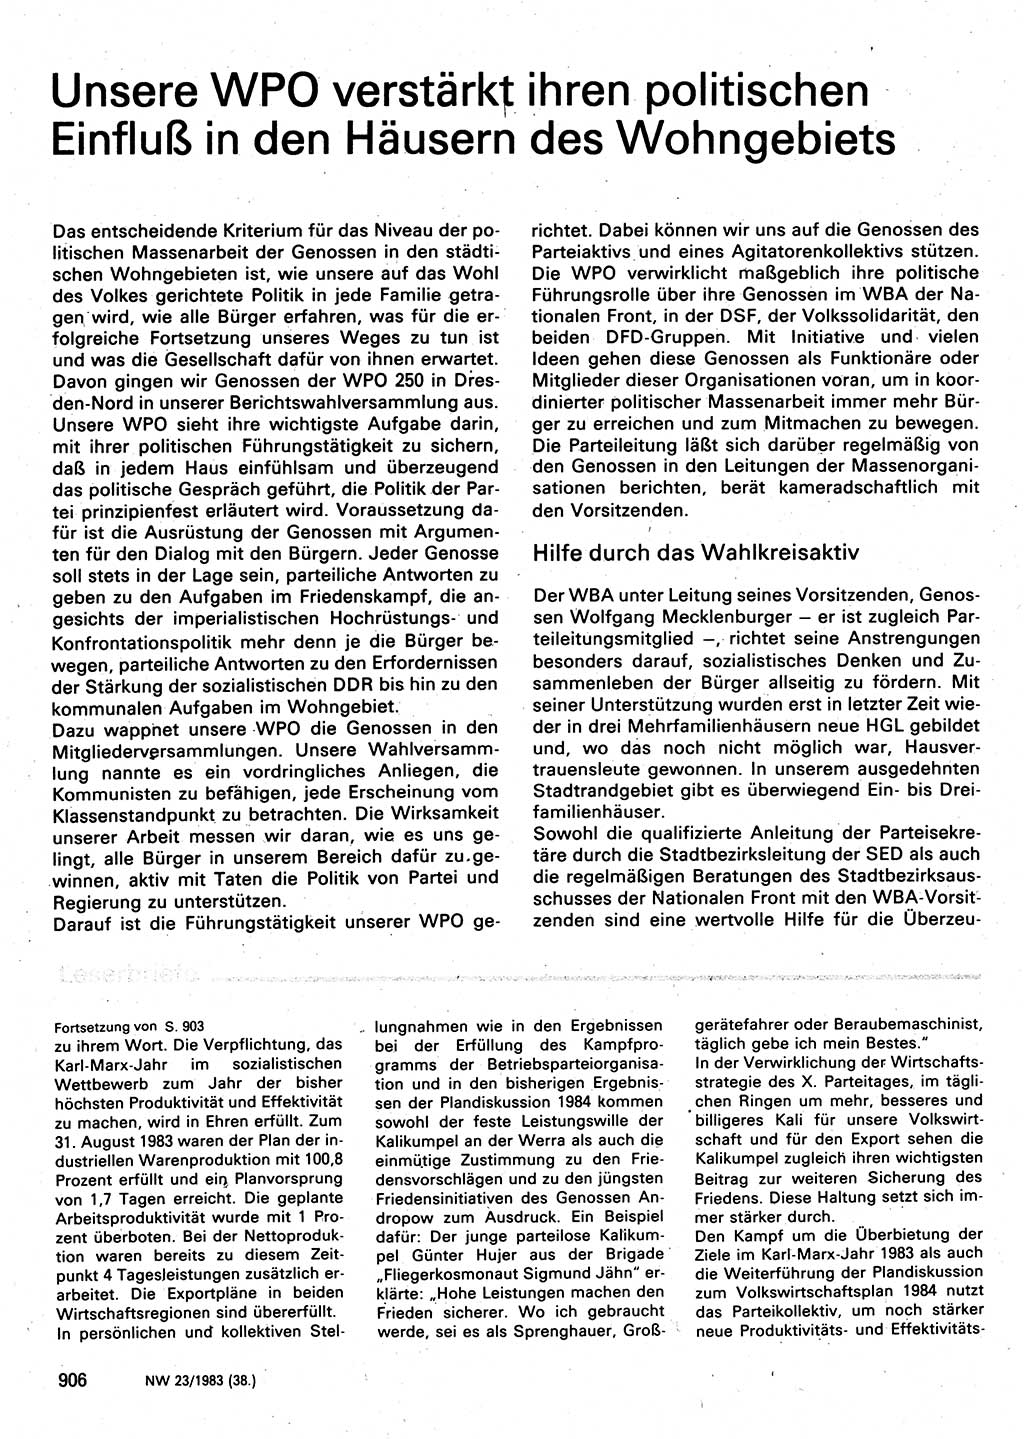 Neuer Weg (NW), Organ des Zentralkomitees (ZK) der SED (Sozialistische Einheitspartei Deutschlands) für Fragen des Parteilebens, 38. Jahrgang [Deutsche Demokratische Republik (DDR)] 1983, Seite 906 (NW ZK SED DDR 1983, S. 906)